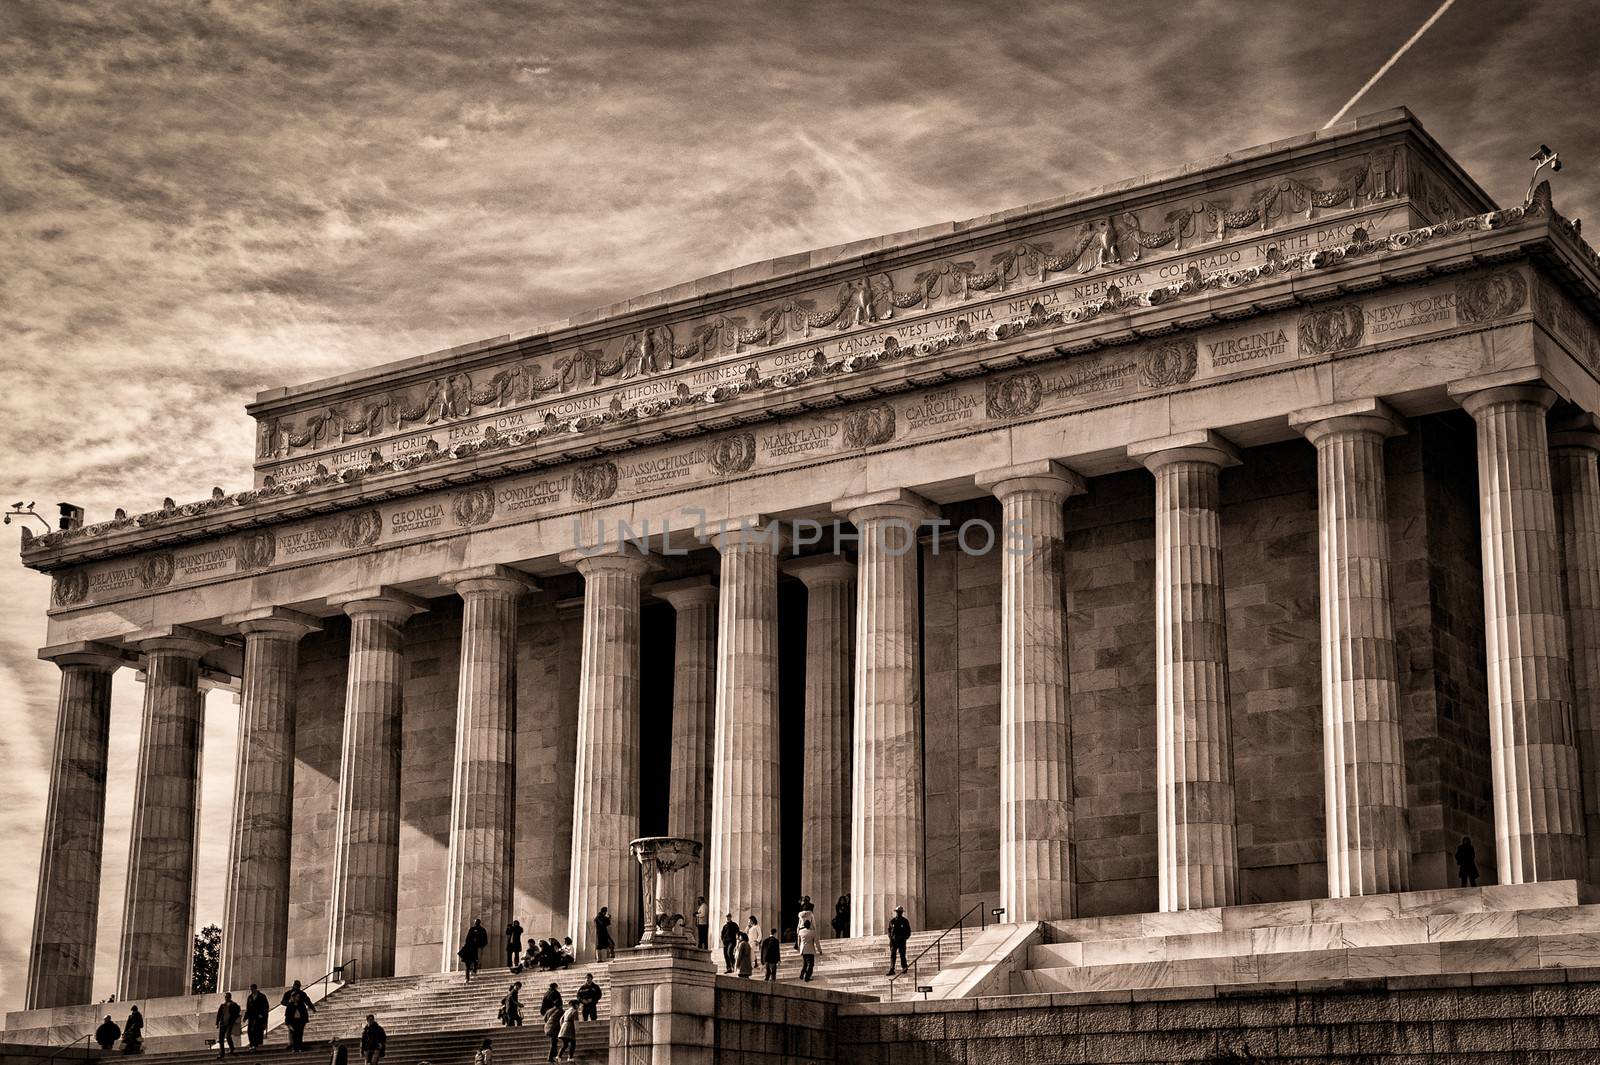 The Lincoln Memorial in sepia tone.